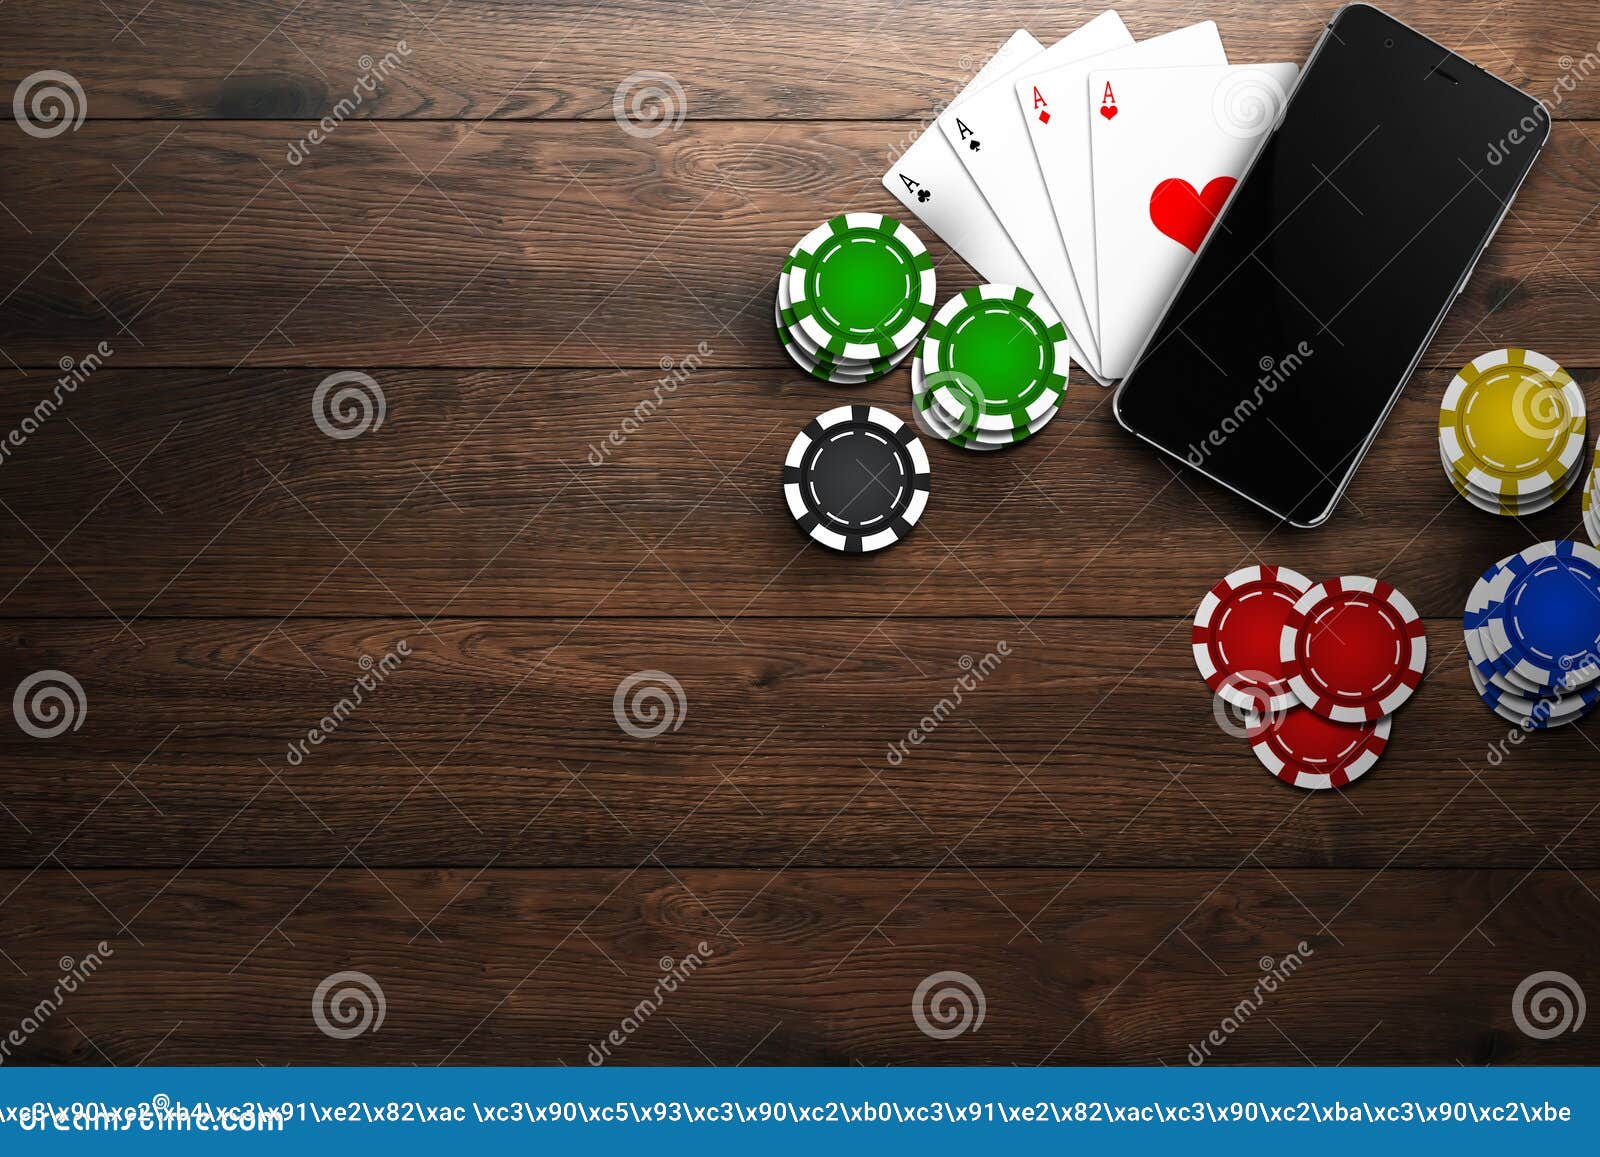 Интернет казино мобильном казино халява